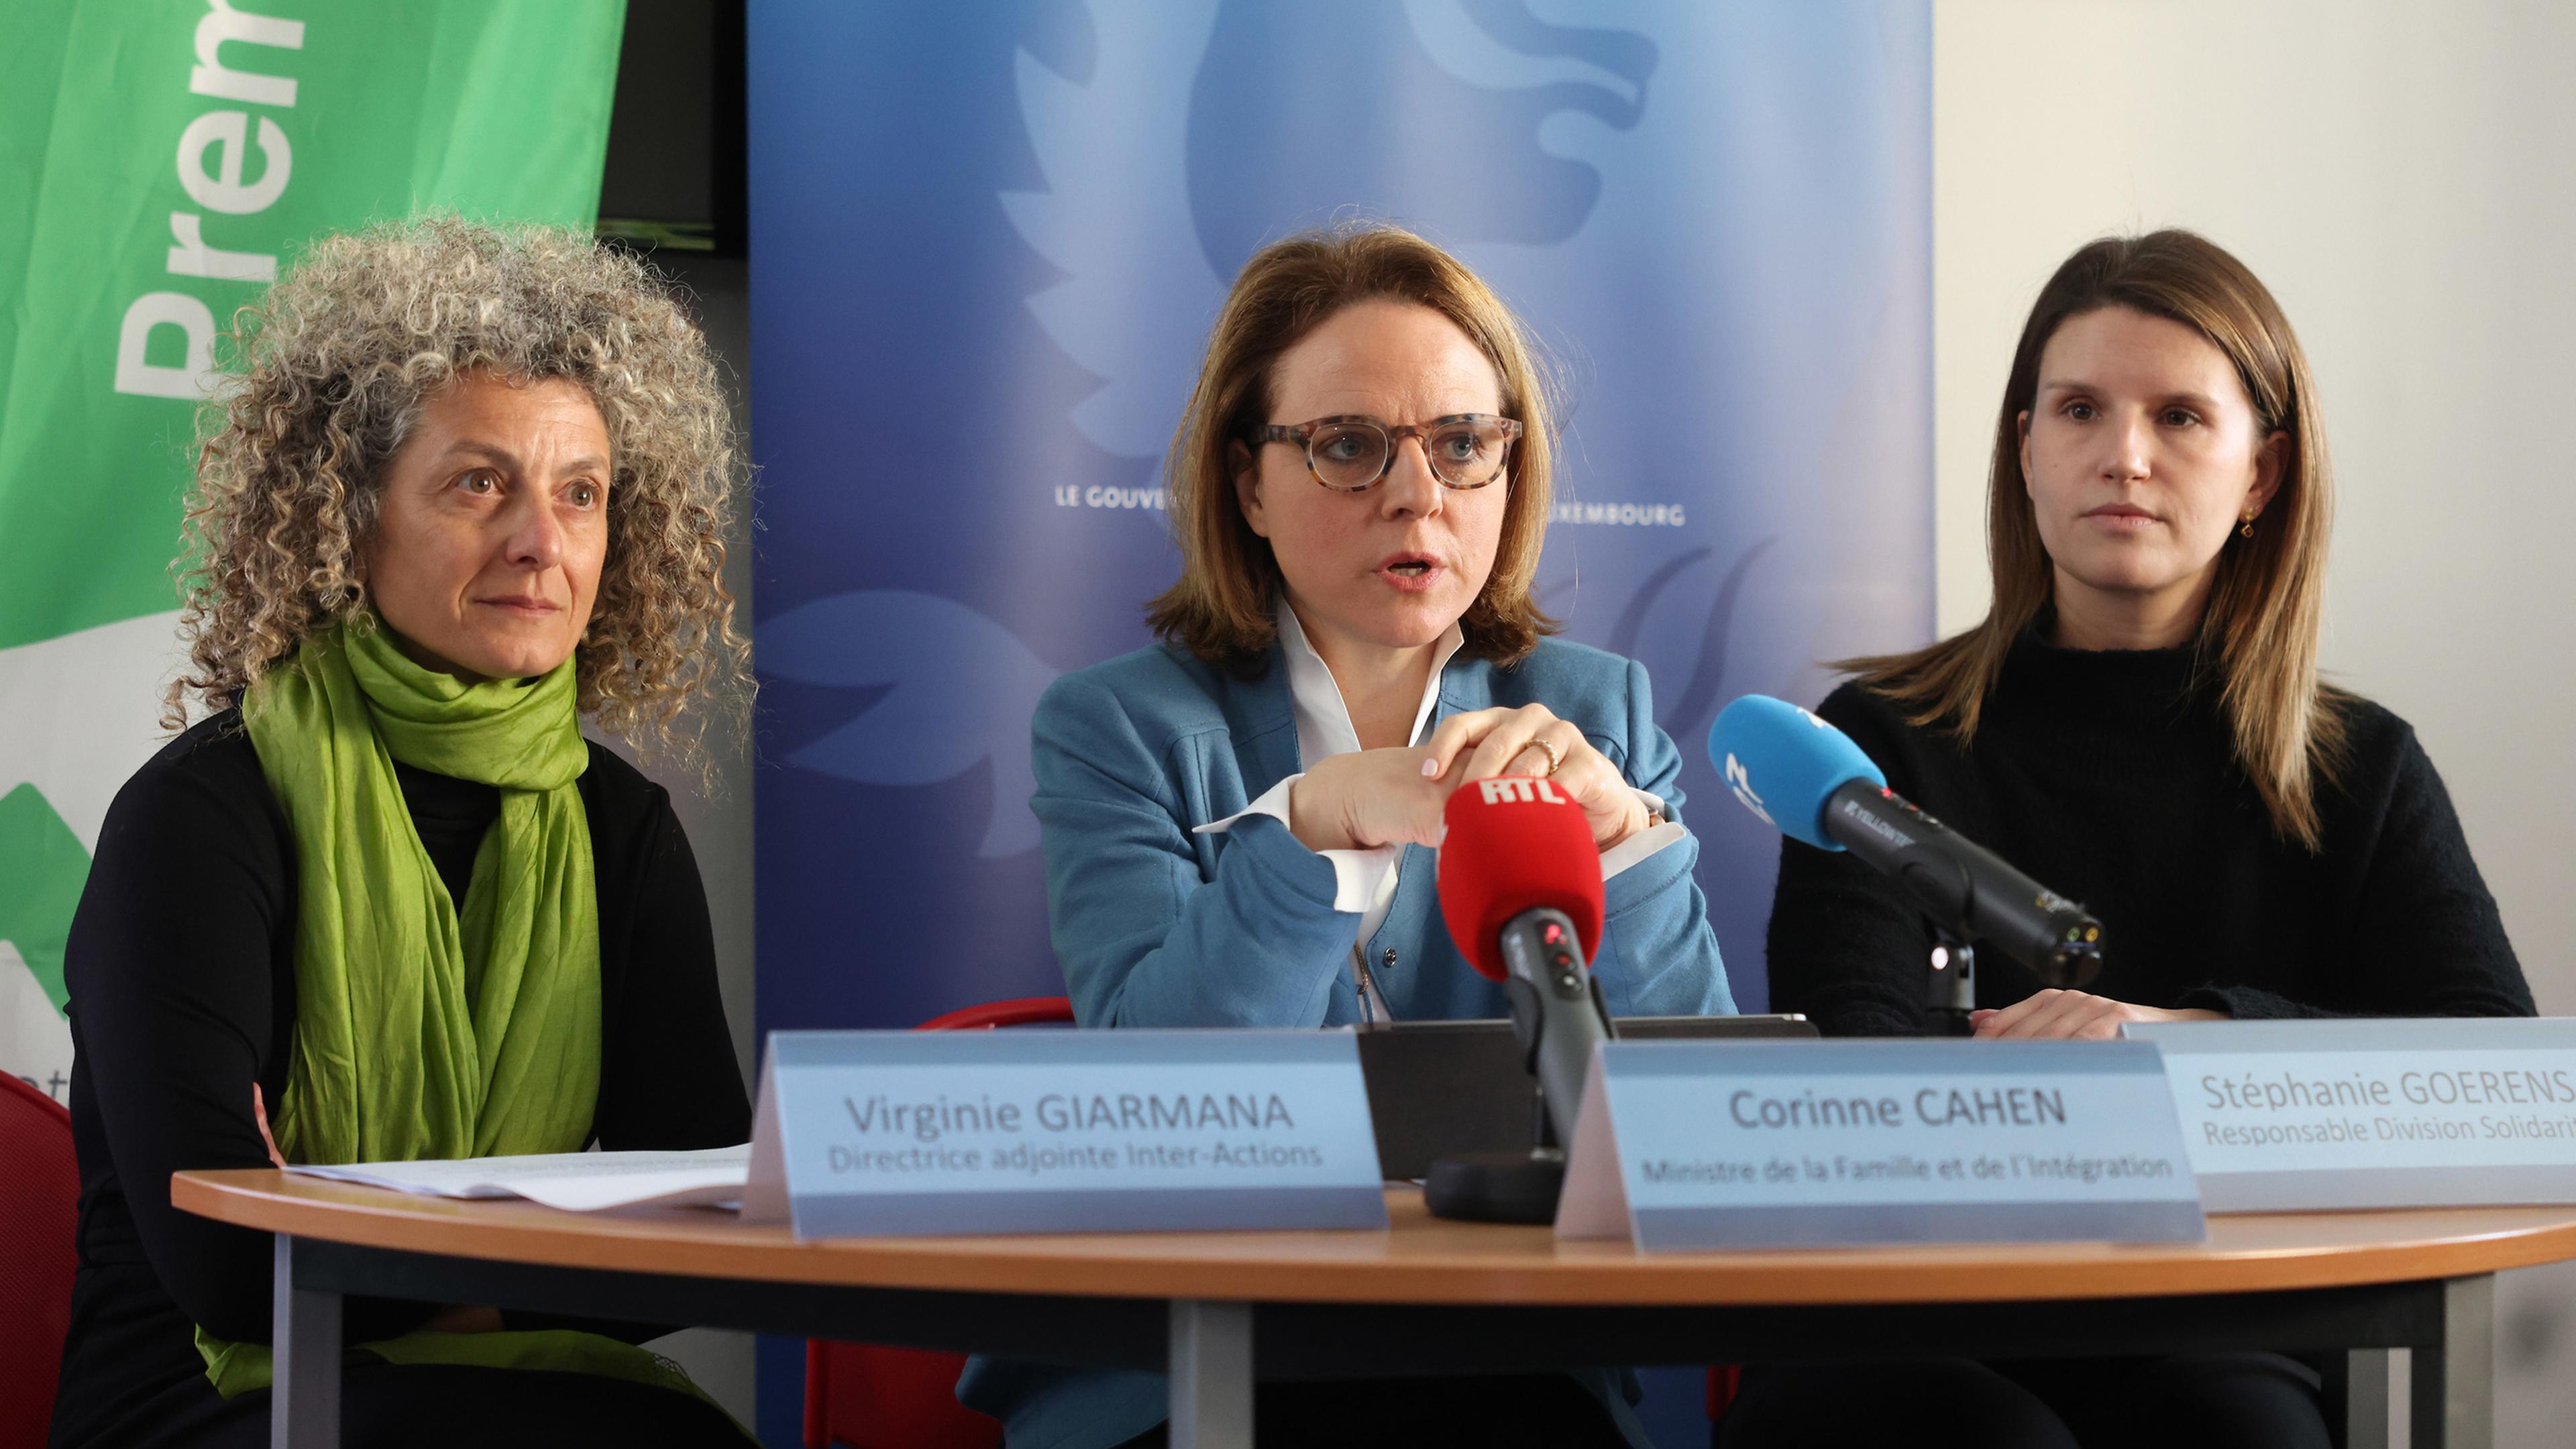 Virginie Giarmana, beigeordnete Direktorin von Inter-Actions, Familienministerin Corinne Cahen und Stéphanie Goerens, Verantwortliche der Division solidarité, stellten die Ergebnisse vor.